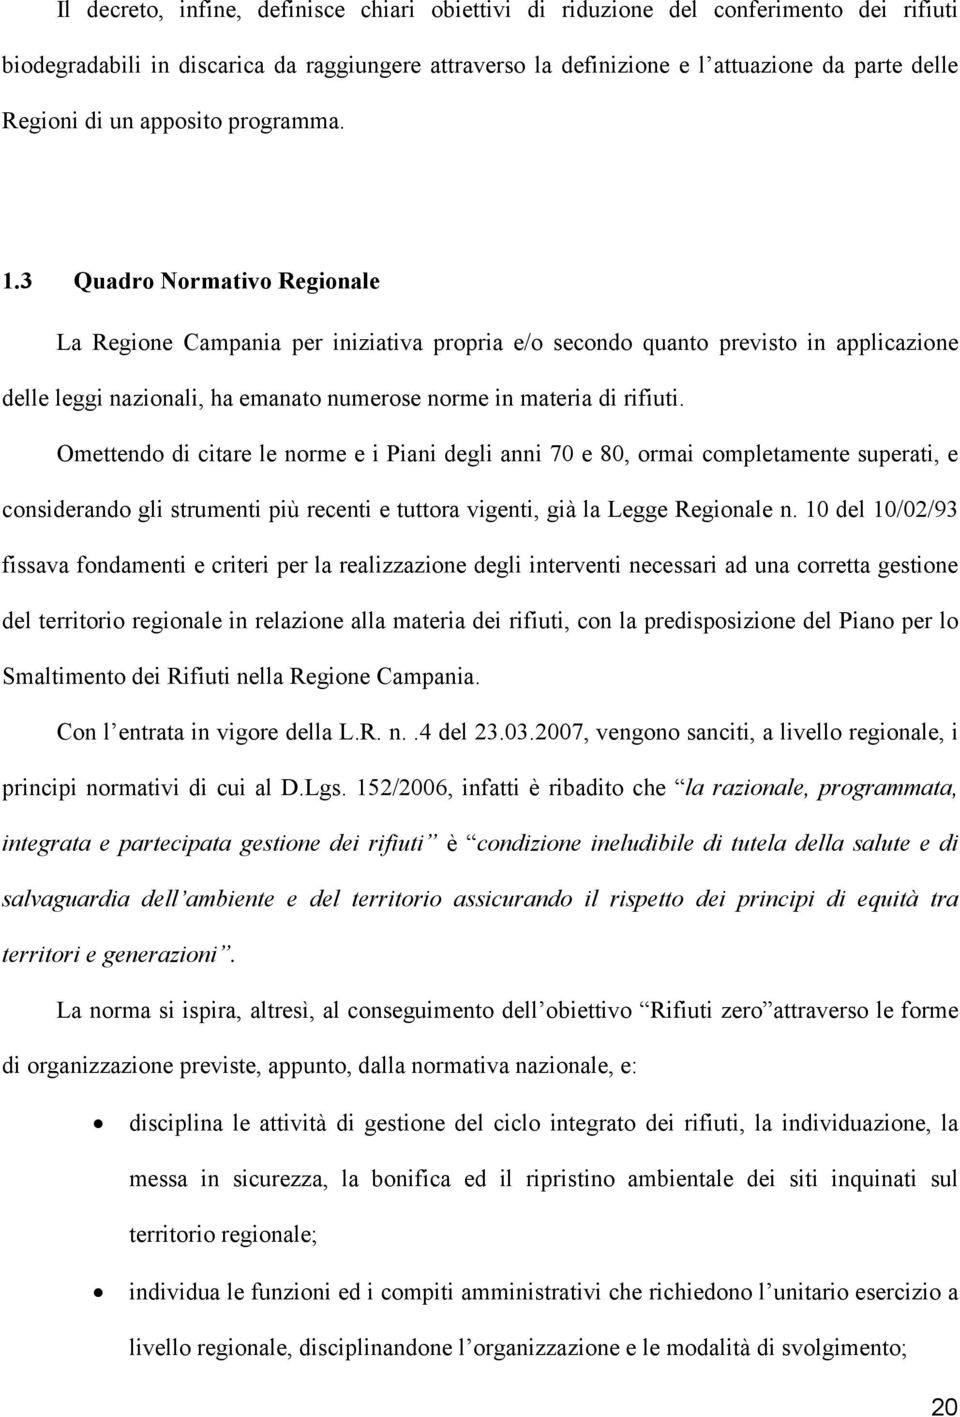 3 Quadro Normativo Regionale La Regione Campania per iniziativa propria e/o secondo quanto previsto in applicazione delle leggi nazionali, ha emanato numerose norme in materia di rifiuti.